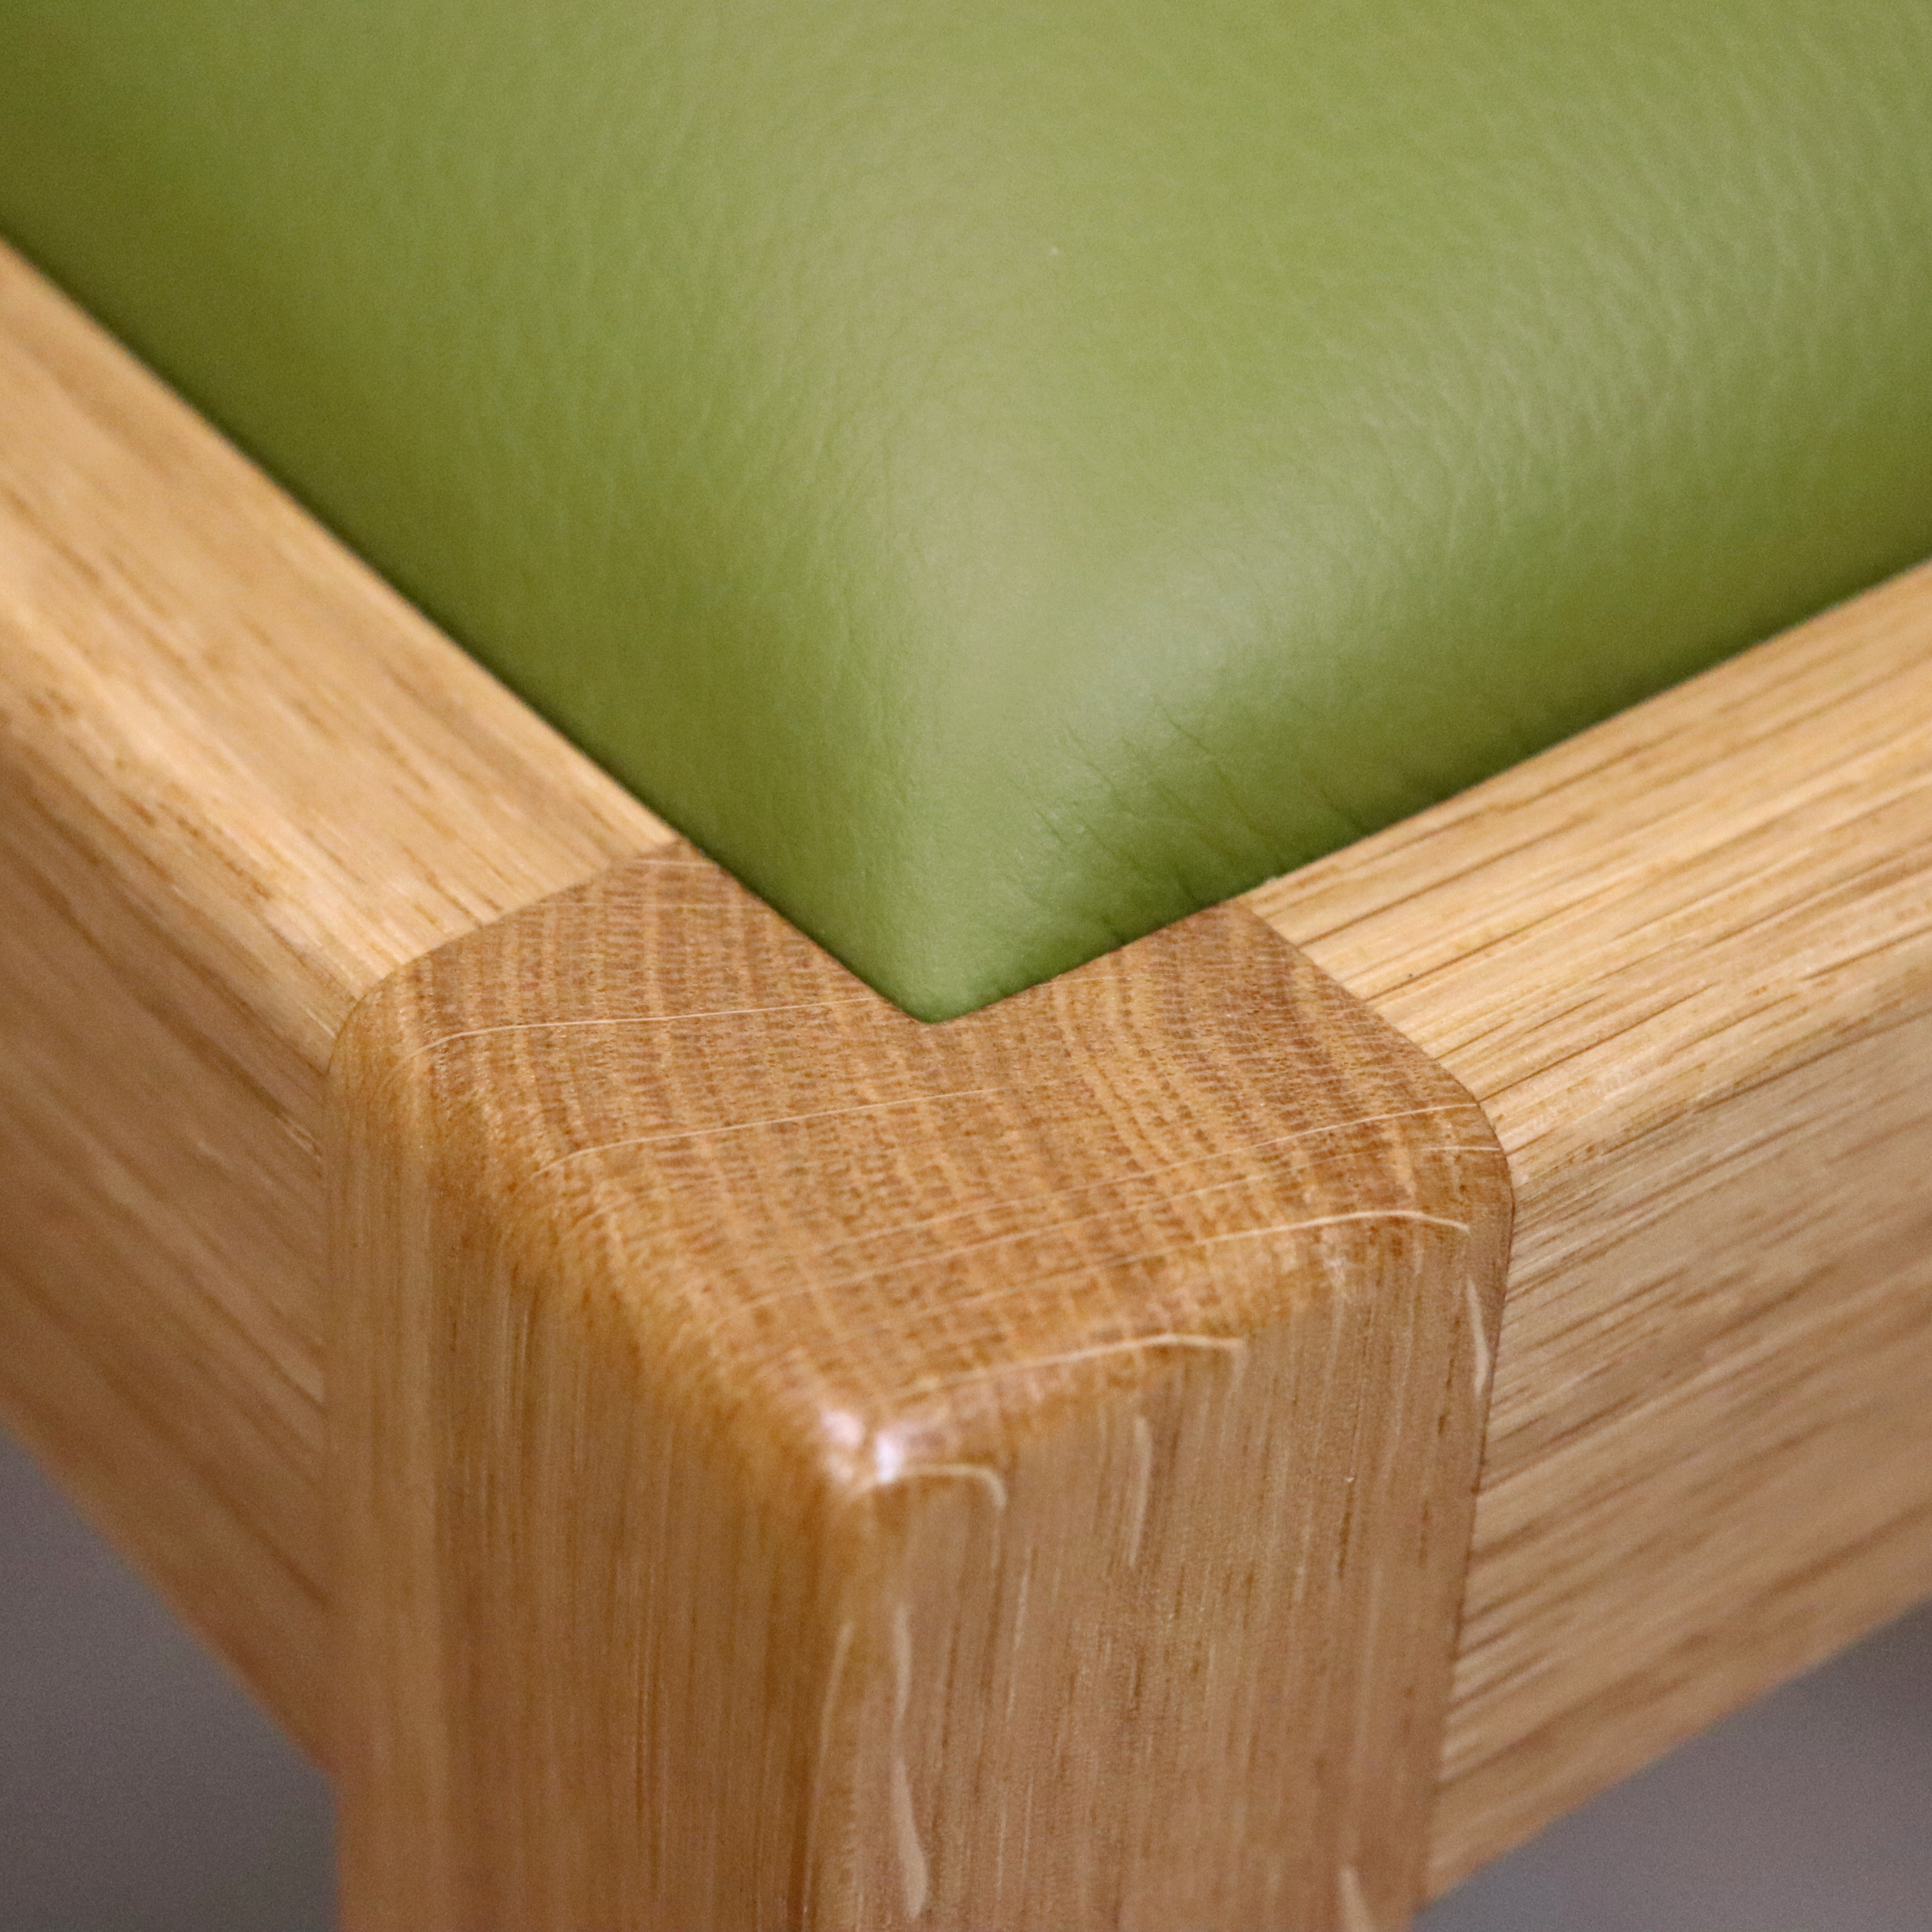 Holzstuhl massive Eiche braun Leder grün Handarbeit